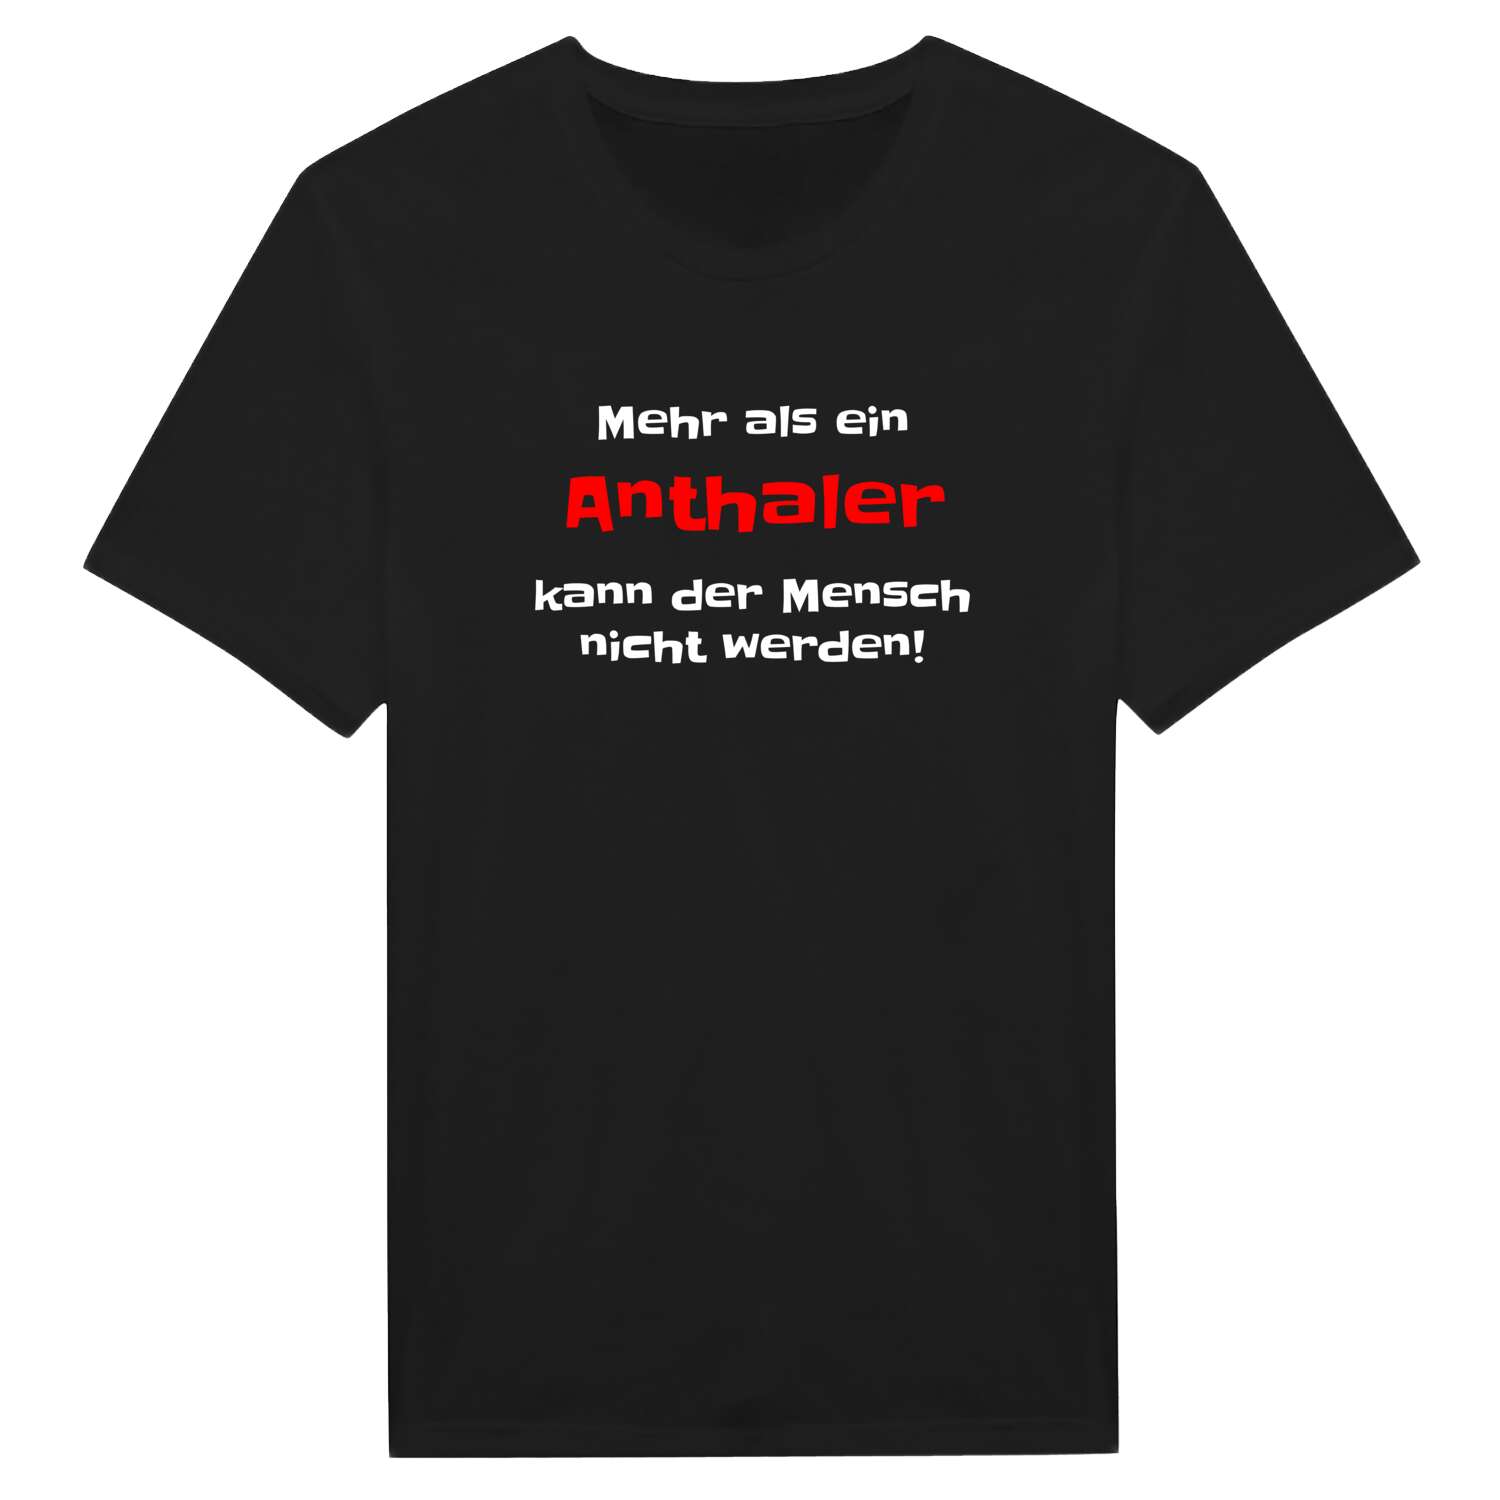 Anthal T-Shirt »Mehr als ein«